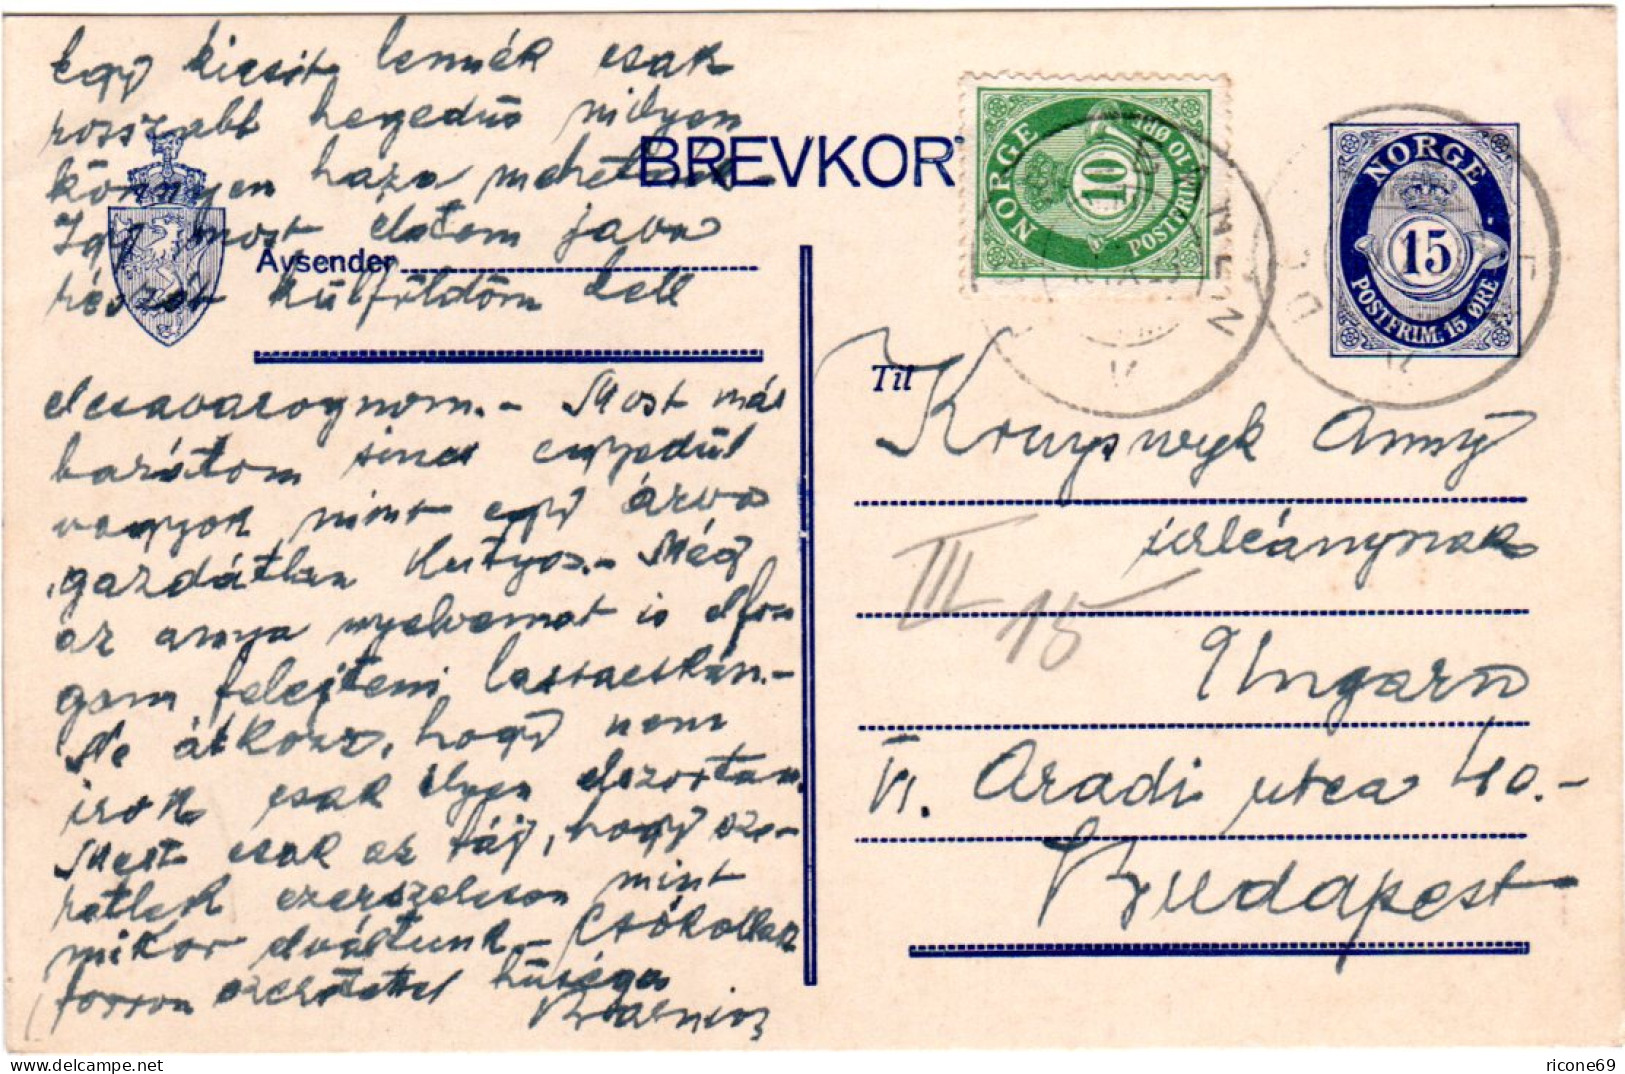 Norwegen 1923, 15 öre Ganzsache M. Zusatzfr. U. Bahnpost V. Trondheim N. Ungarn - Lettres & Documents